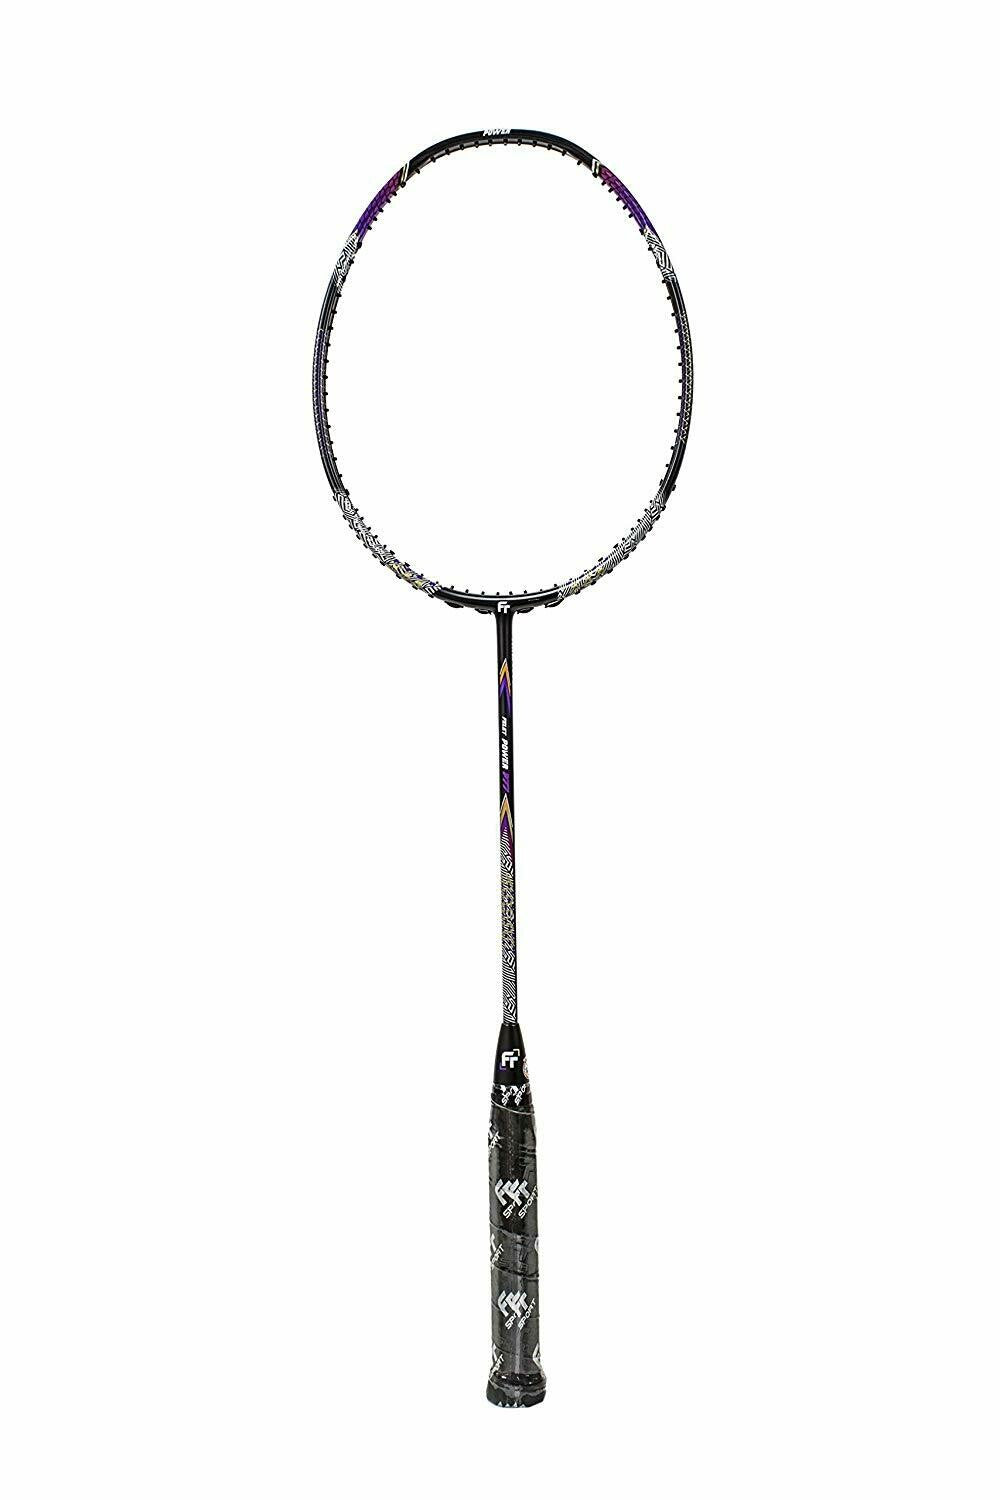 Fleet Felet Power P77 Badminton Racket